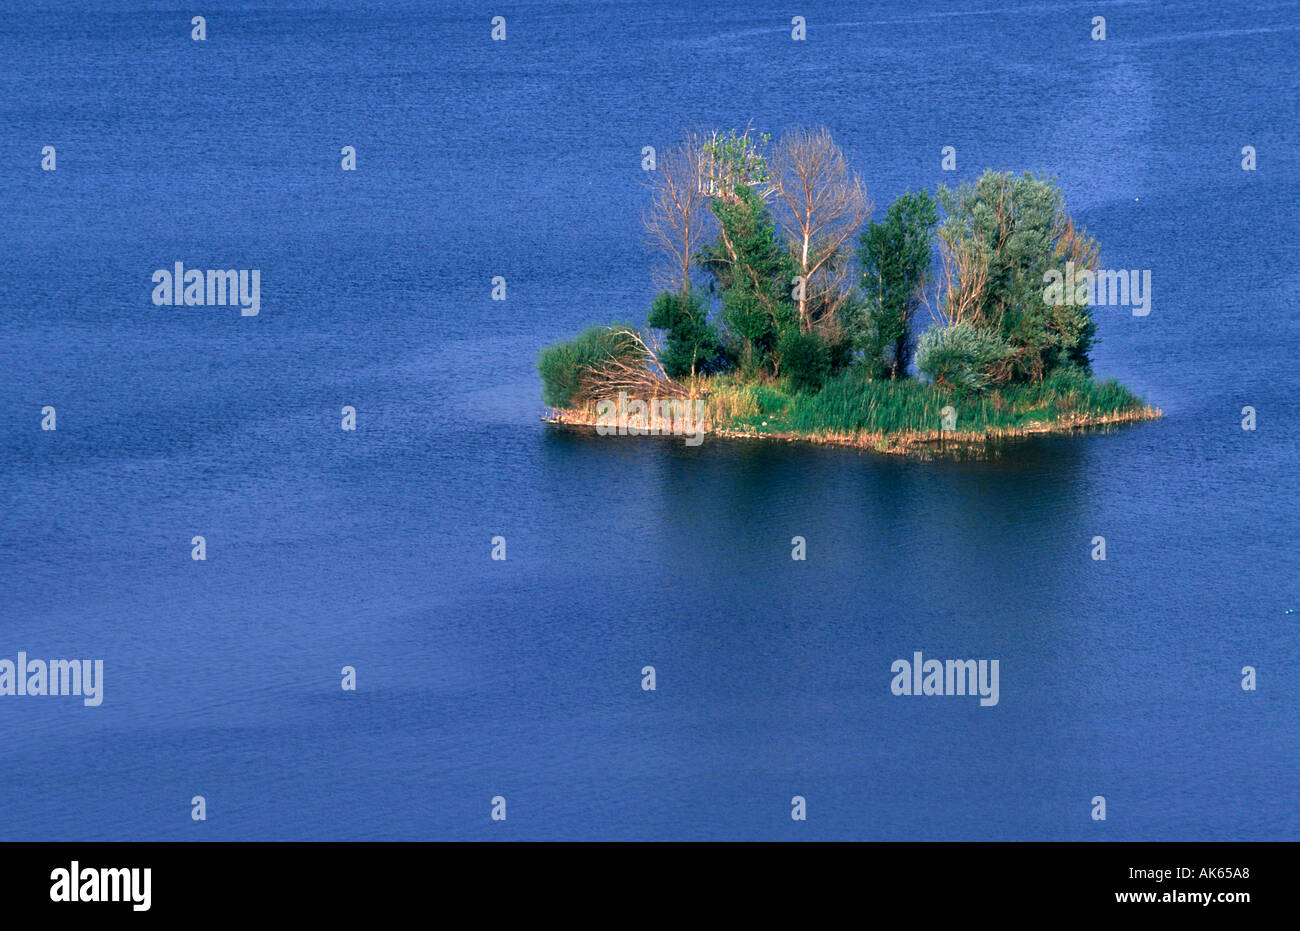 Kleine Insel im See Salagou Languedoc Roussillon Frankreich Kleine Insel Im Lac Salagou Languedoc Roussillon Frankreich Stockfoto